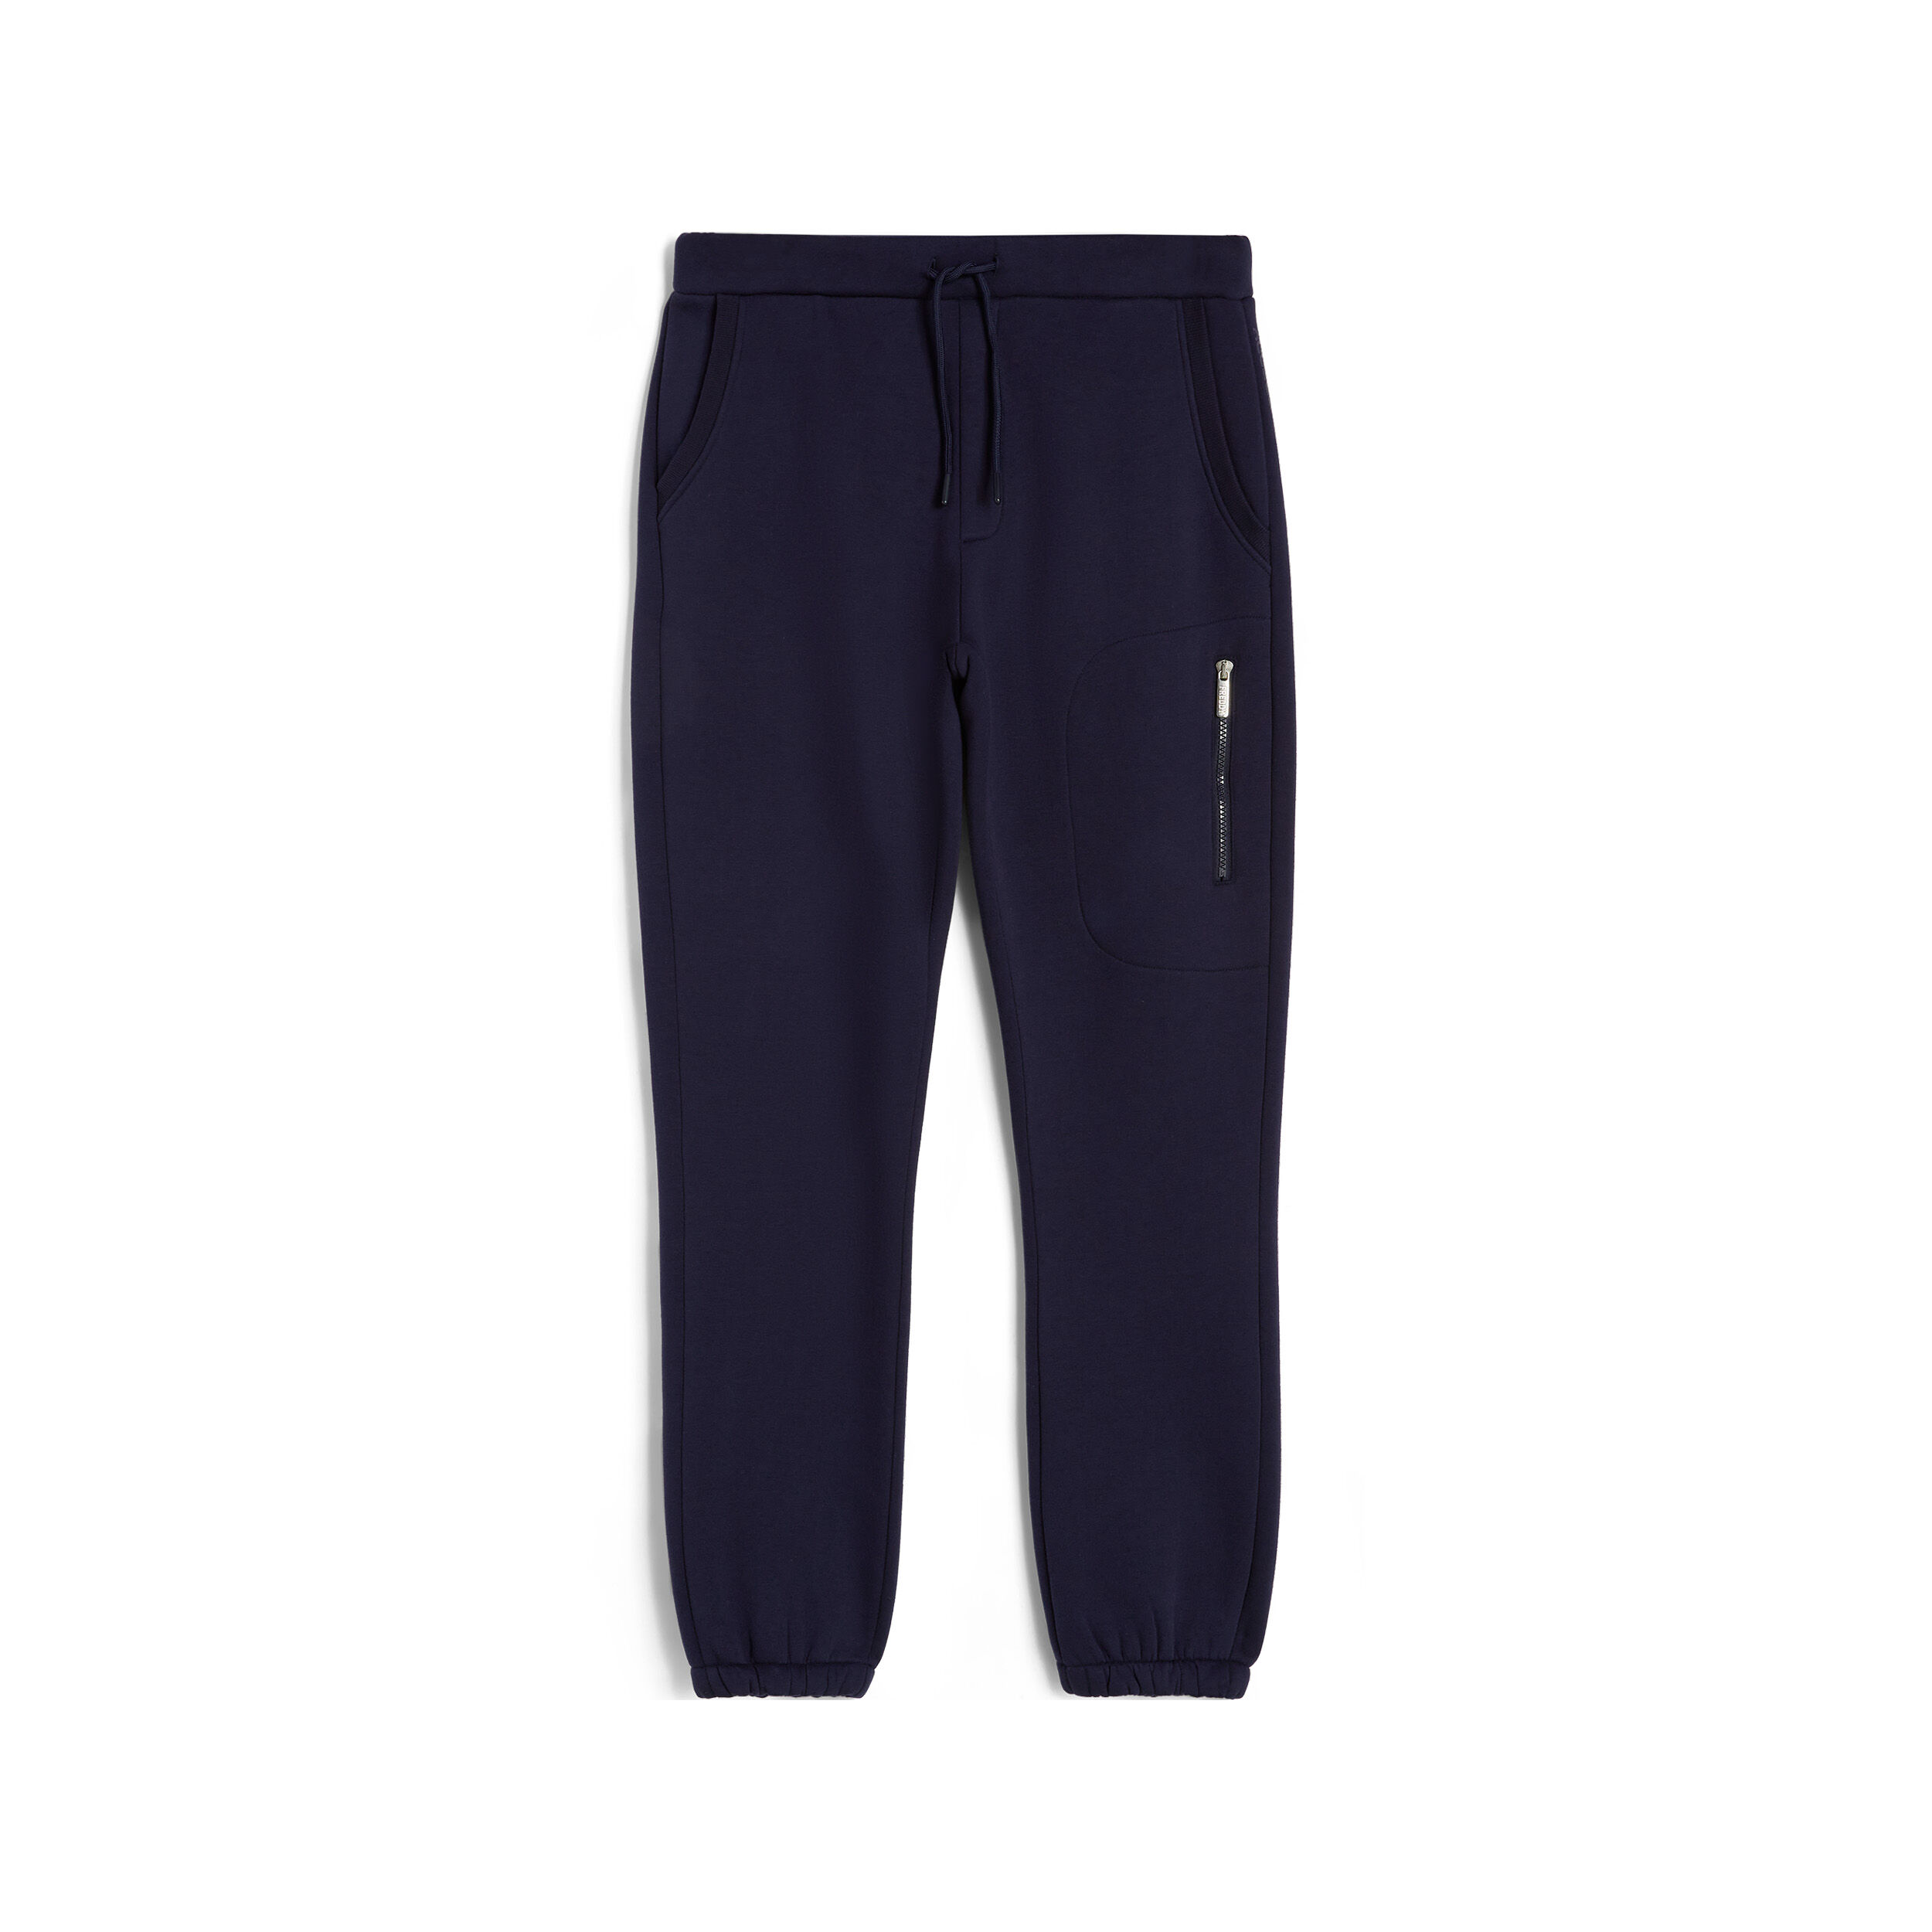 Freddy Pantaloni joggers da uomo con tasca zippata sulla coscia Blu Uomo Xxx Large